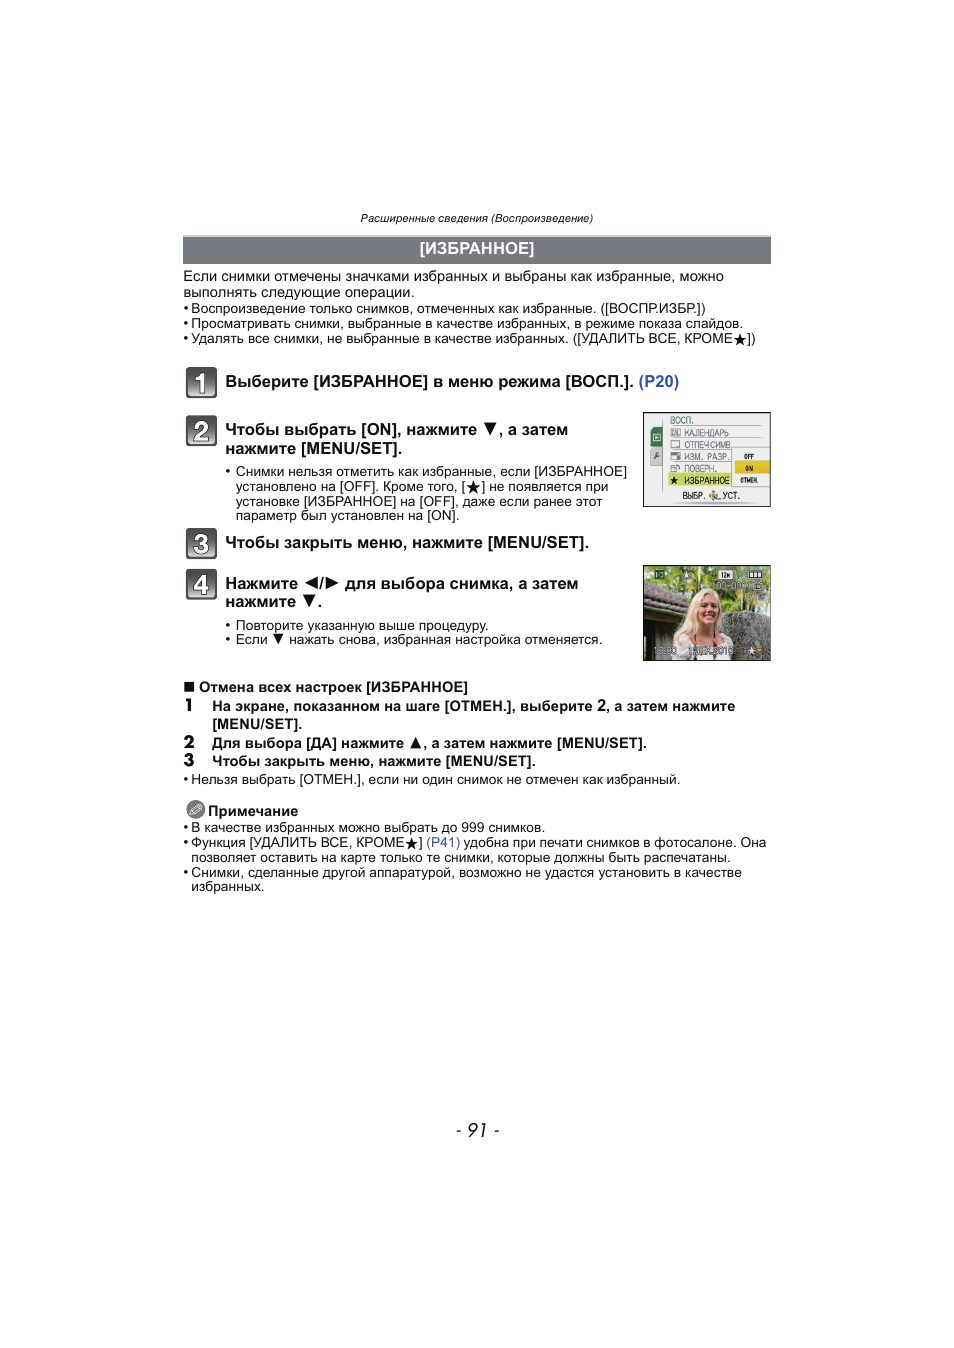 Избранное, P91) | Инструкция по эксплуатации Panasonic KX-MC6020 | Страница 91 / 130